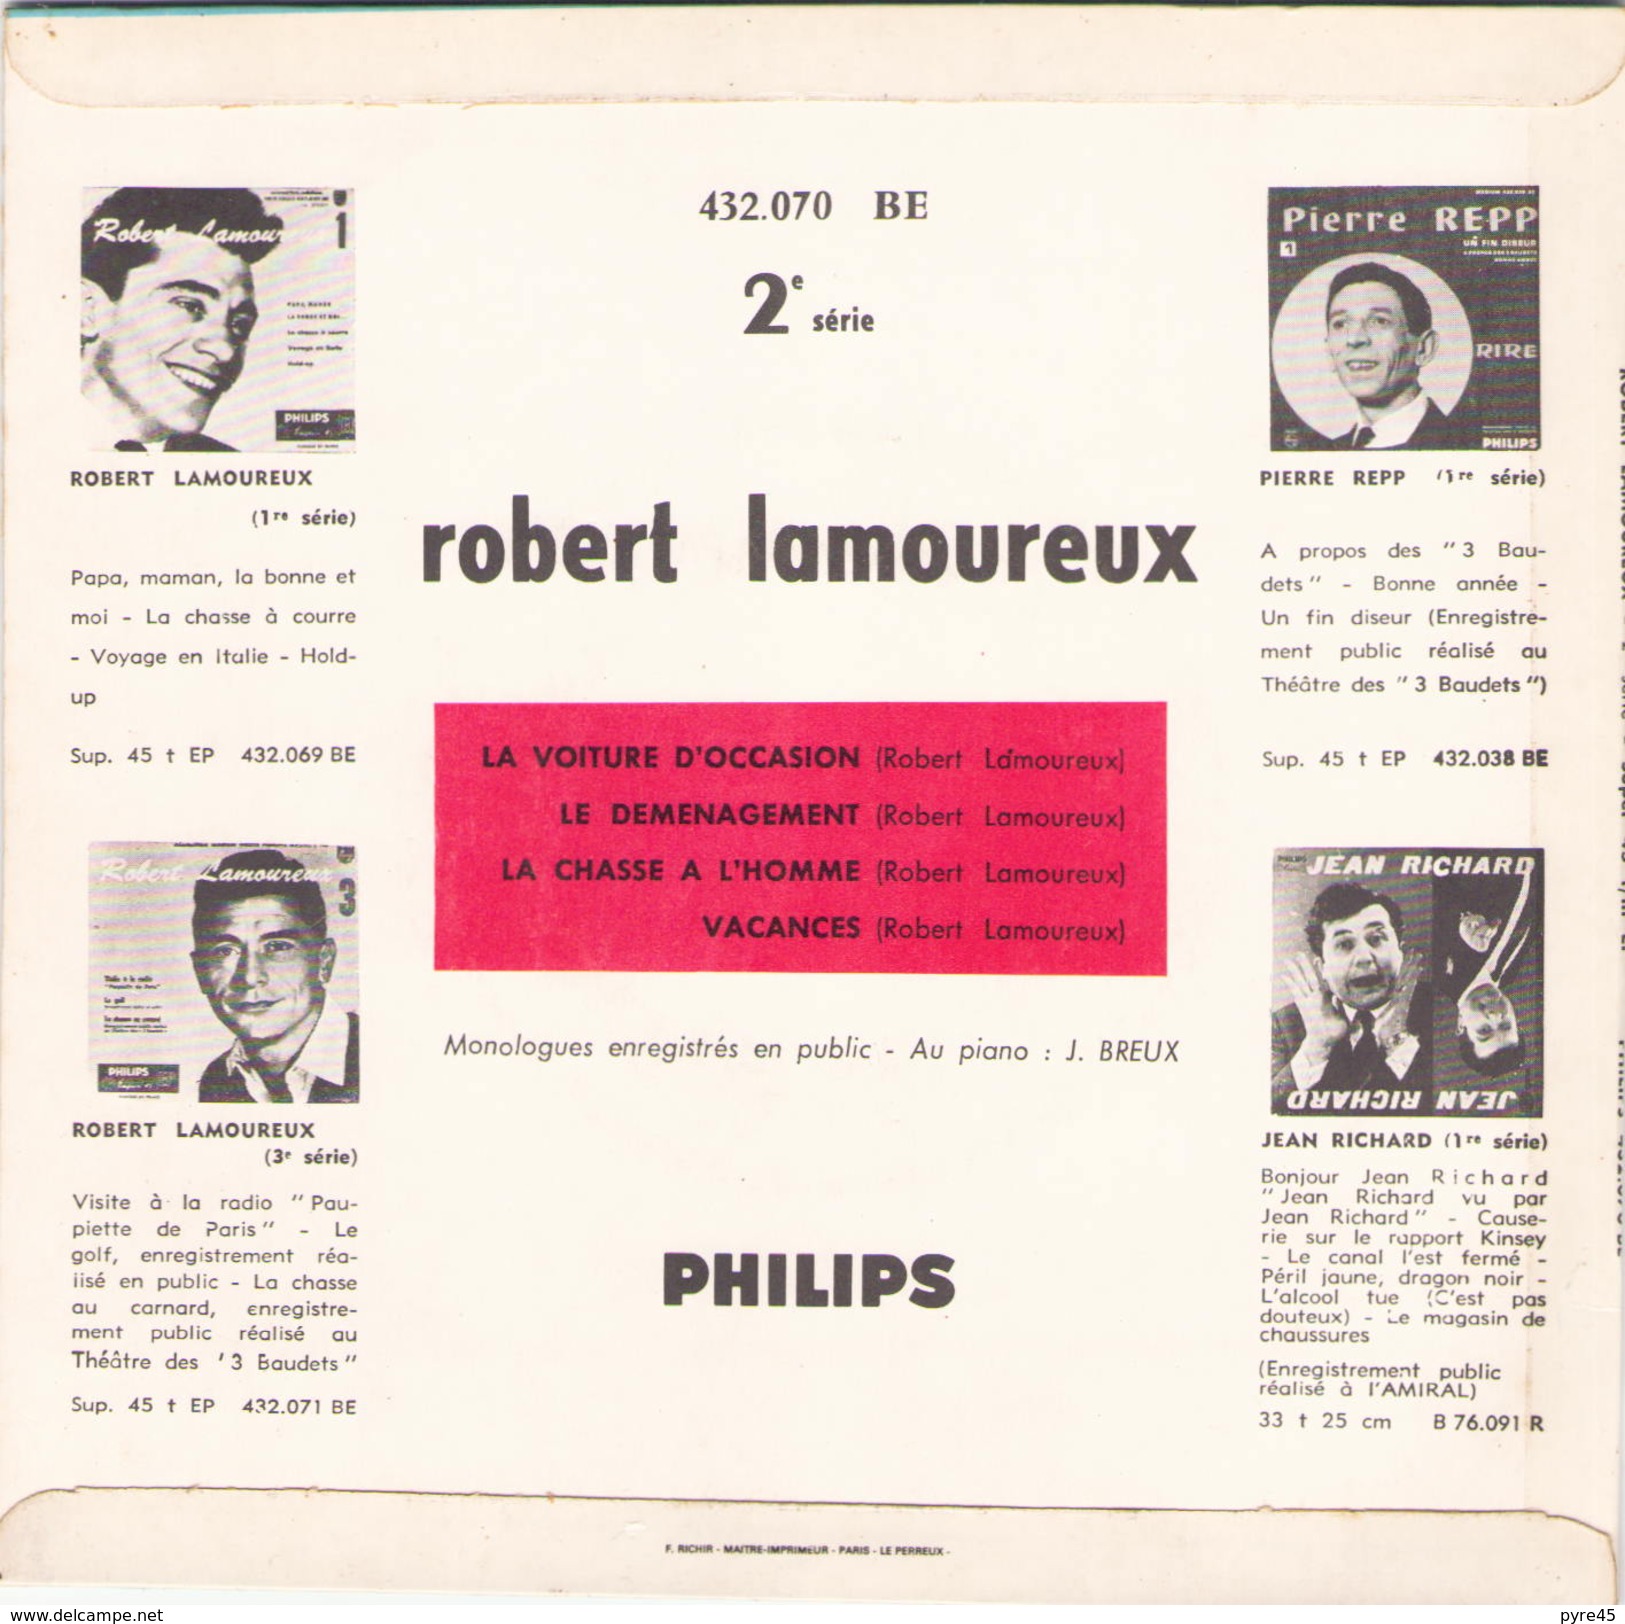 45 TOURS ROBERT LAMOUREUX PHILIPS 432070 LA VOITURE D OCCASION / LE DEMENAGEMENT / LA CHASSE A L HOMME / VACANCES - Humor, Cabaret